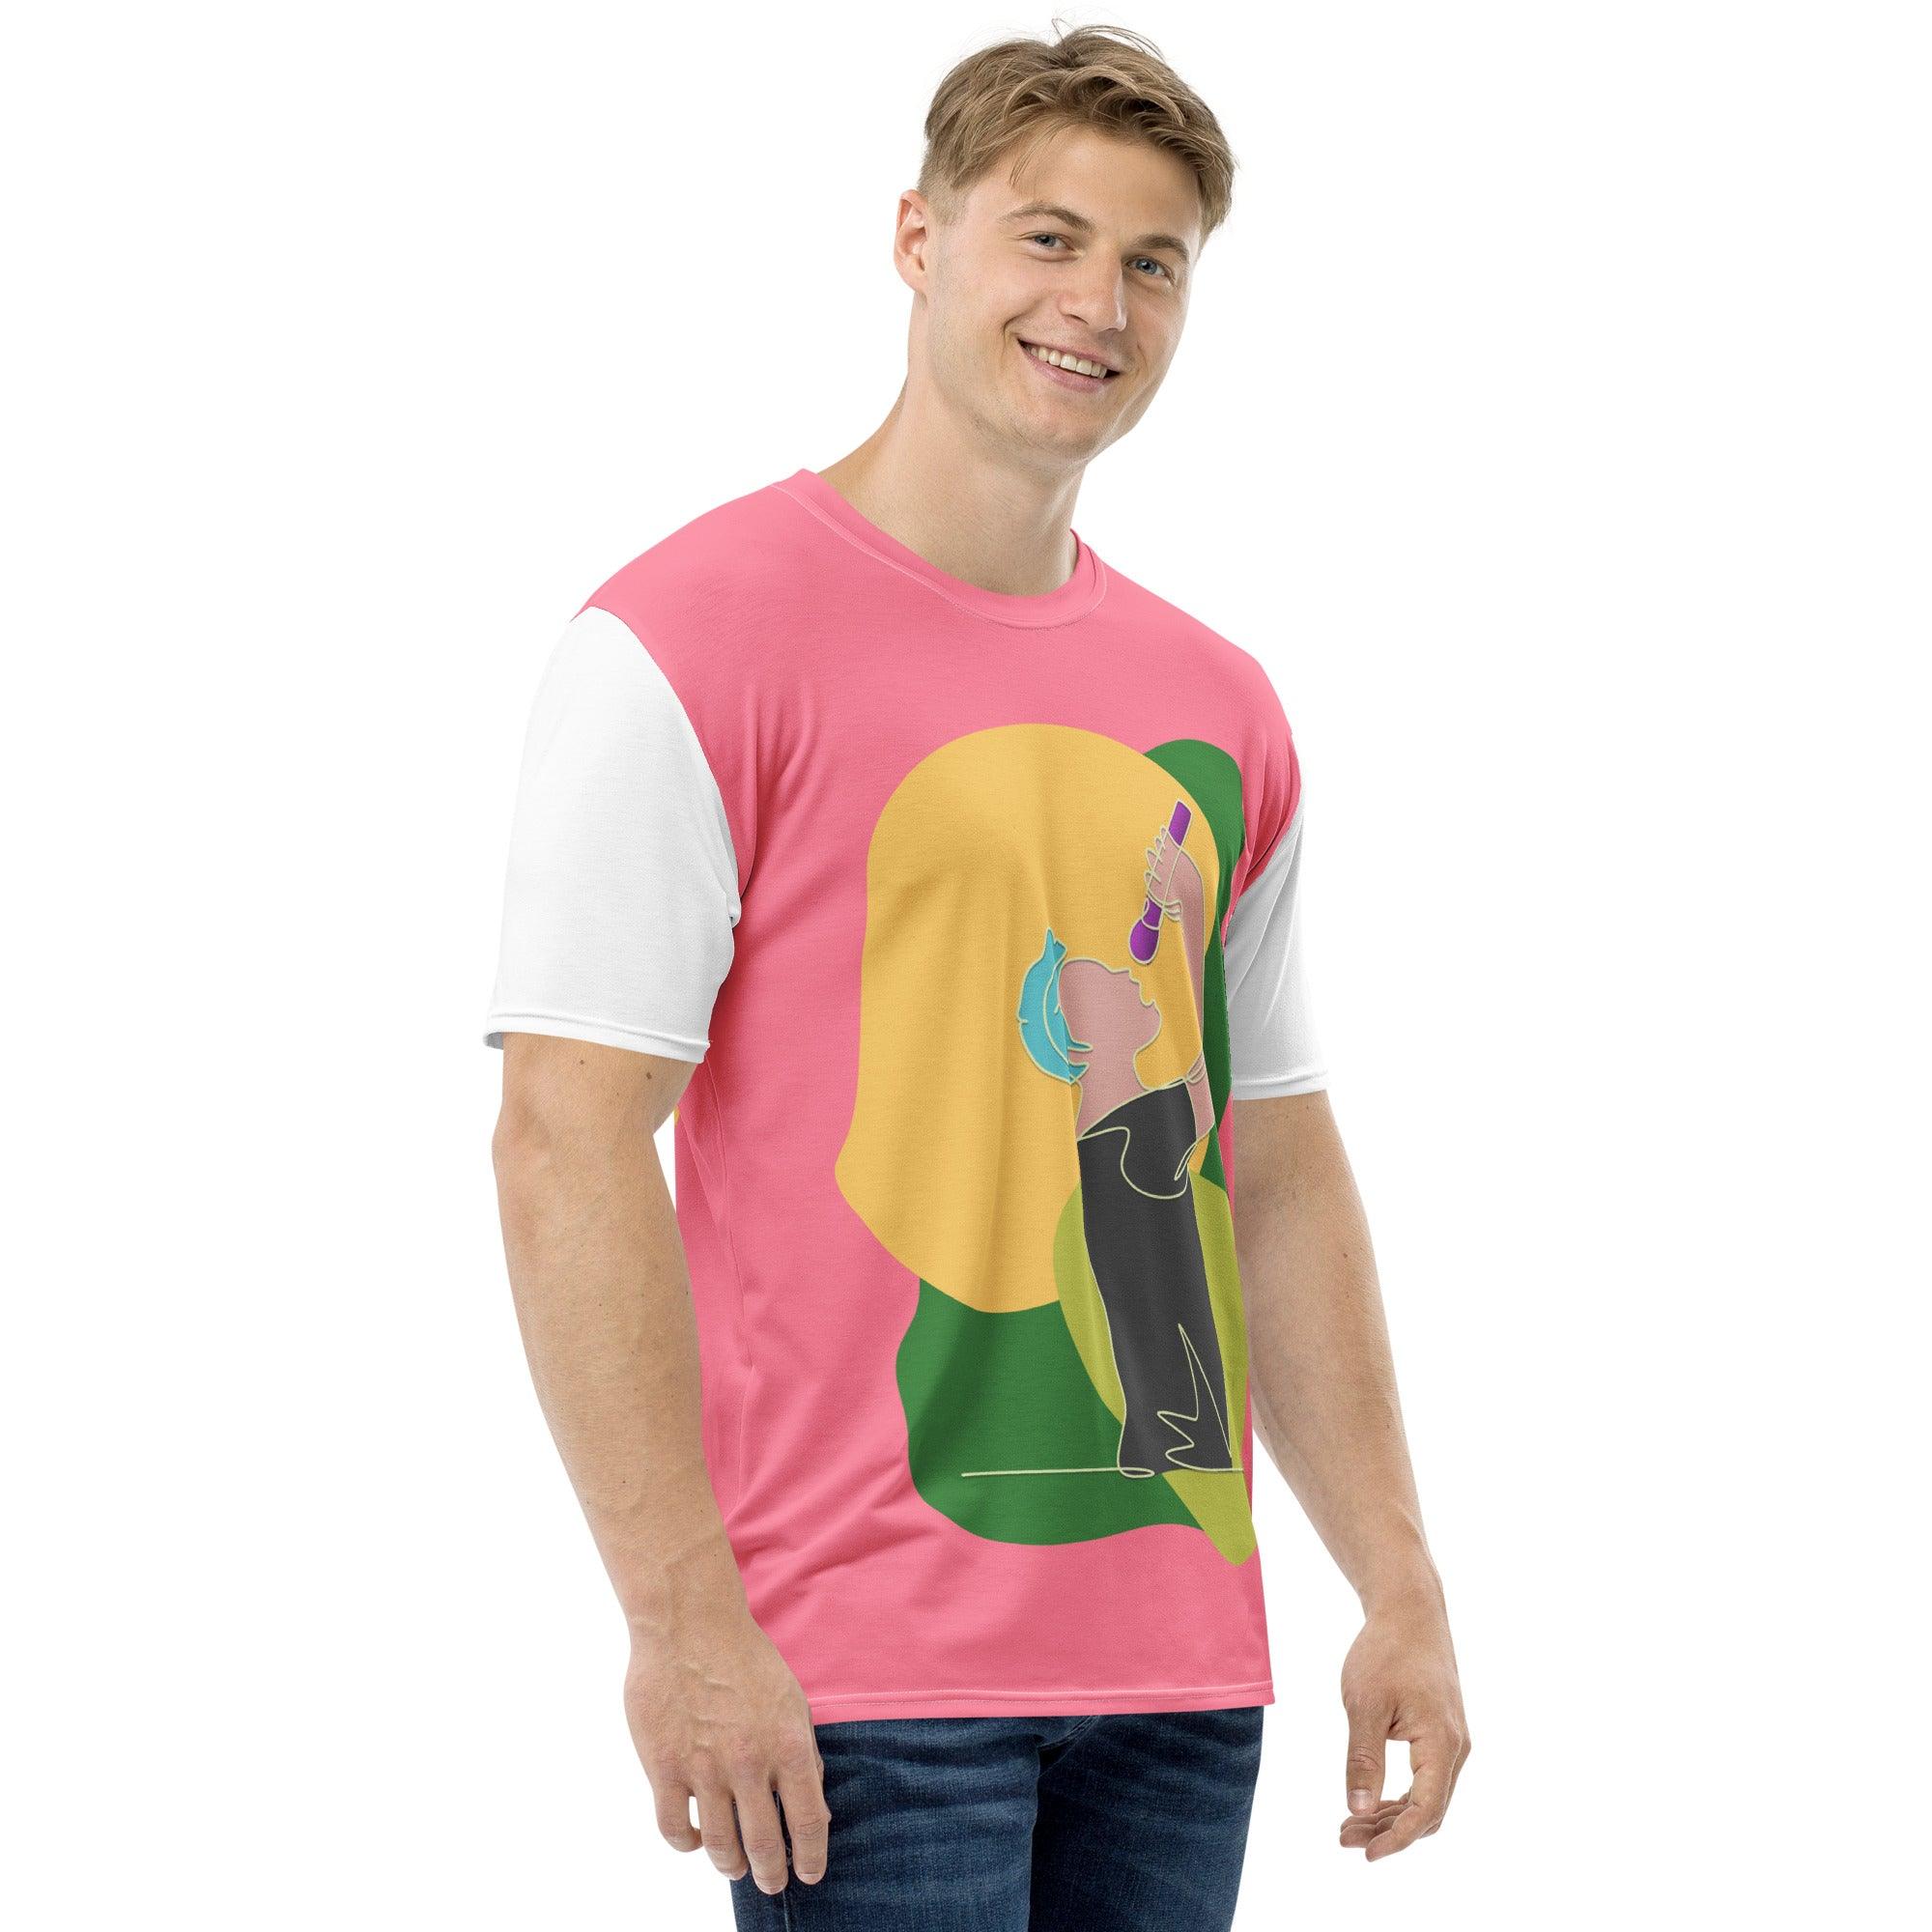 Singing Guy Men's T-Shirt Stylish Design